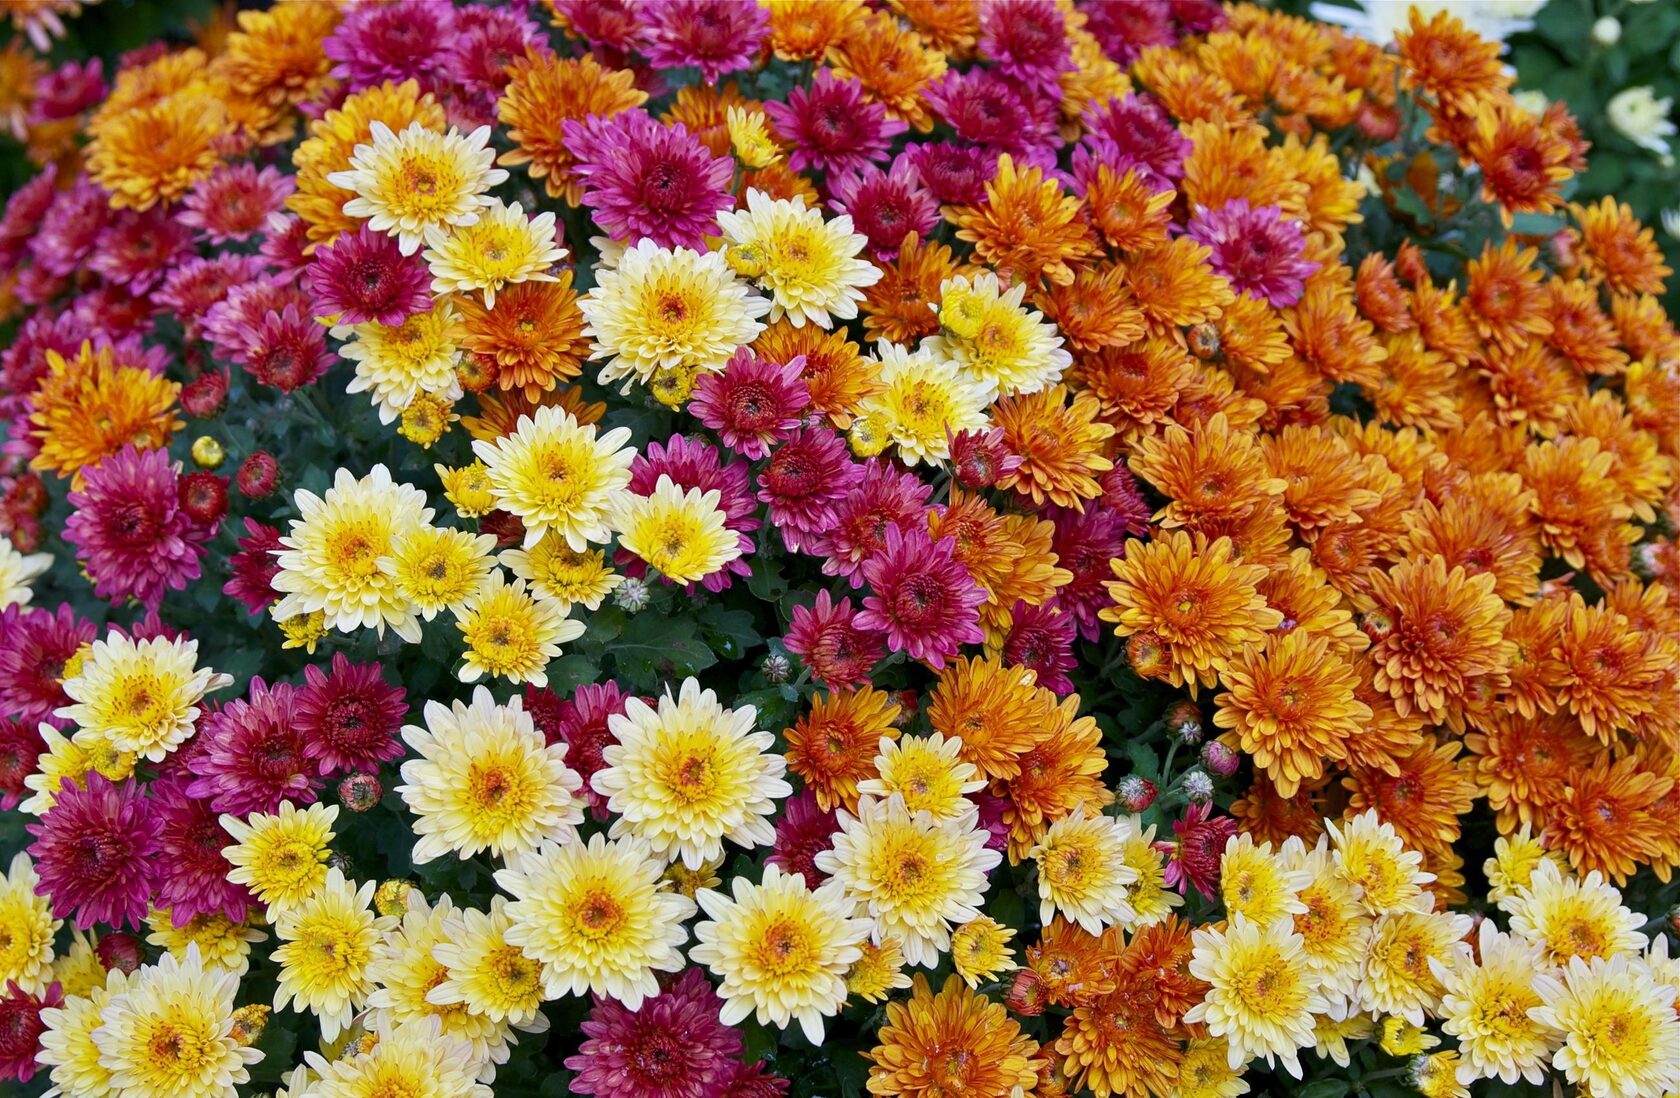 Ввиду широкого разнообразия этих цветов, для них была разработана довольна обширная классификация. Она разделяет хризантемы в зависимости от различных признаков. 